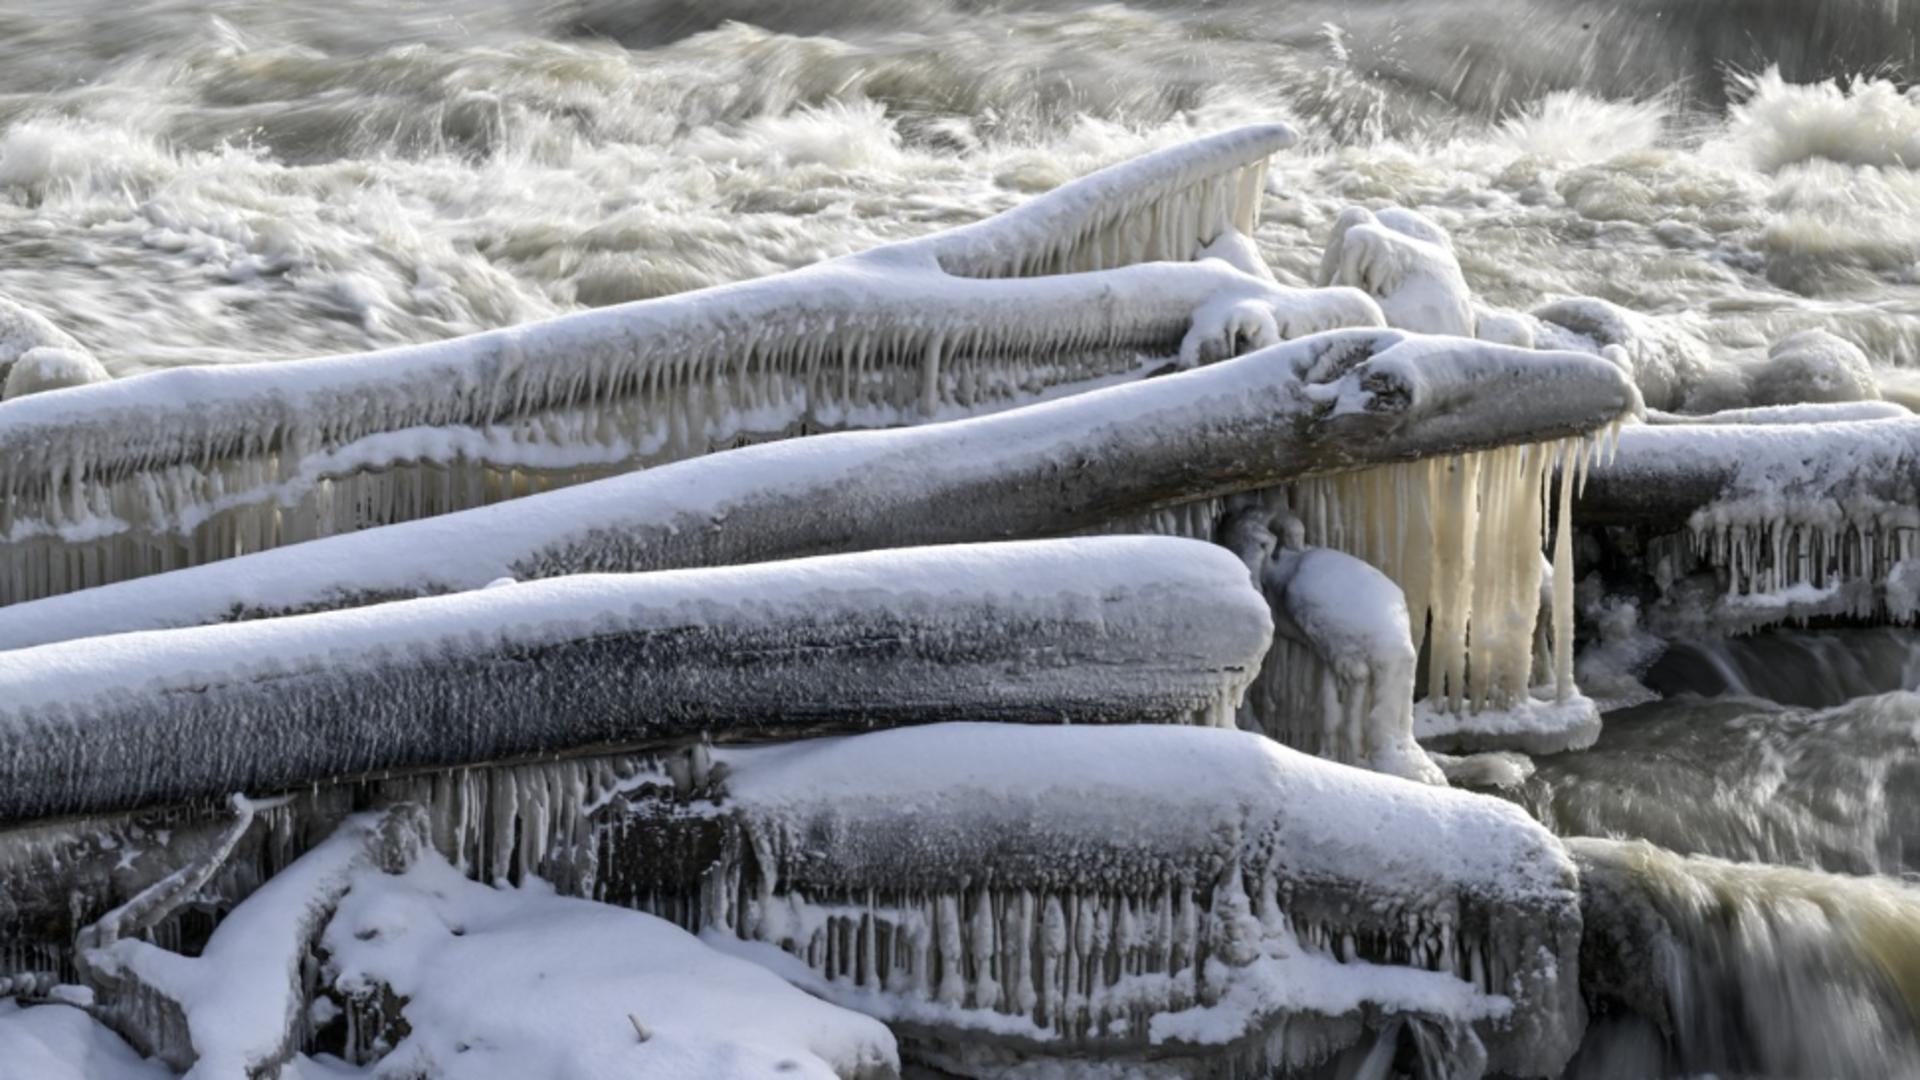 A înghețat cascada Niagara. Imagini nemaivăzute în ultimele decenii - GALERIE FOTO  